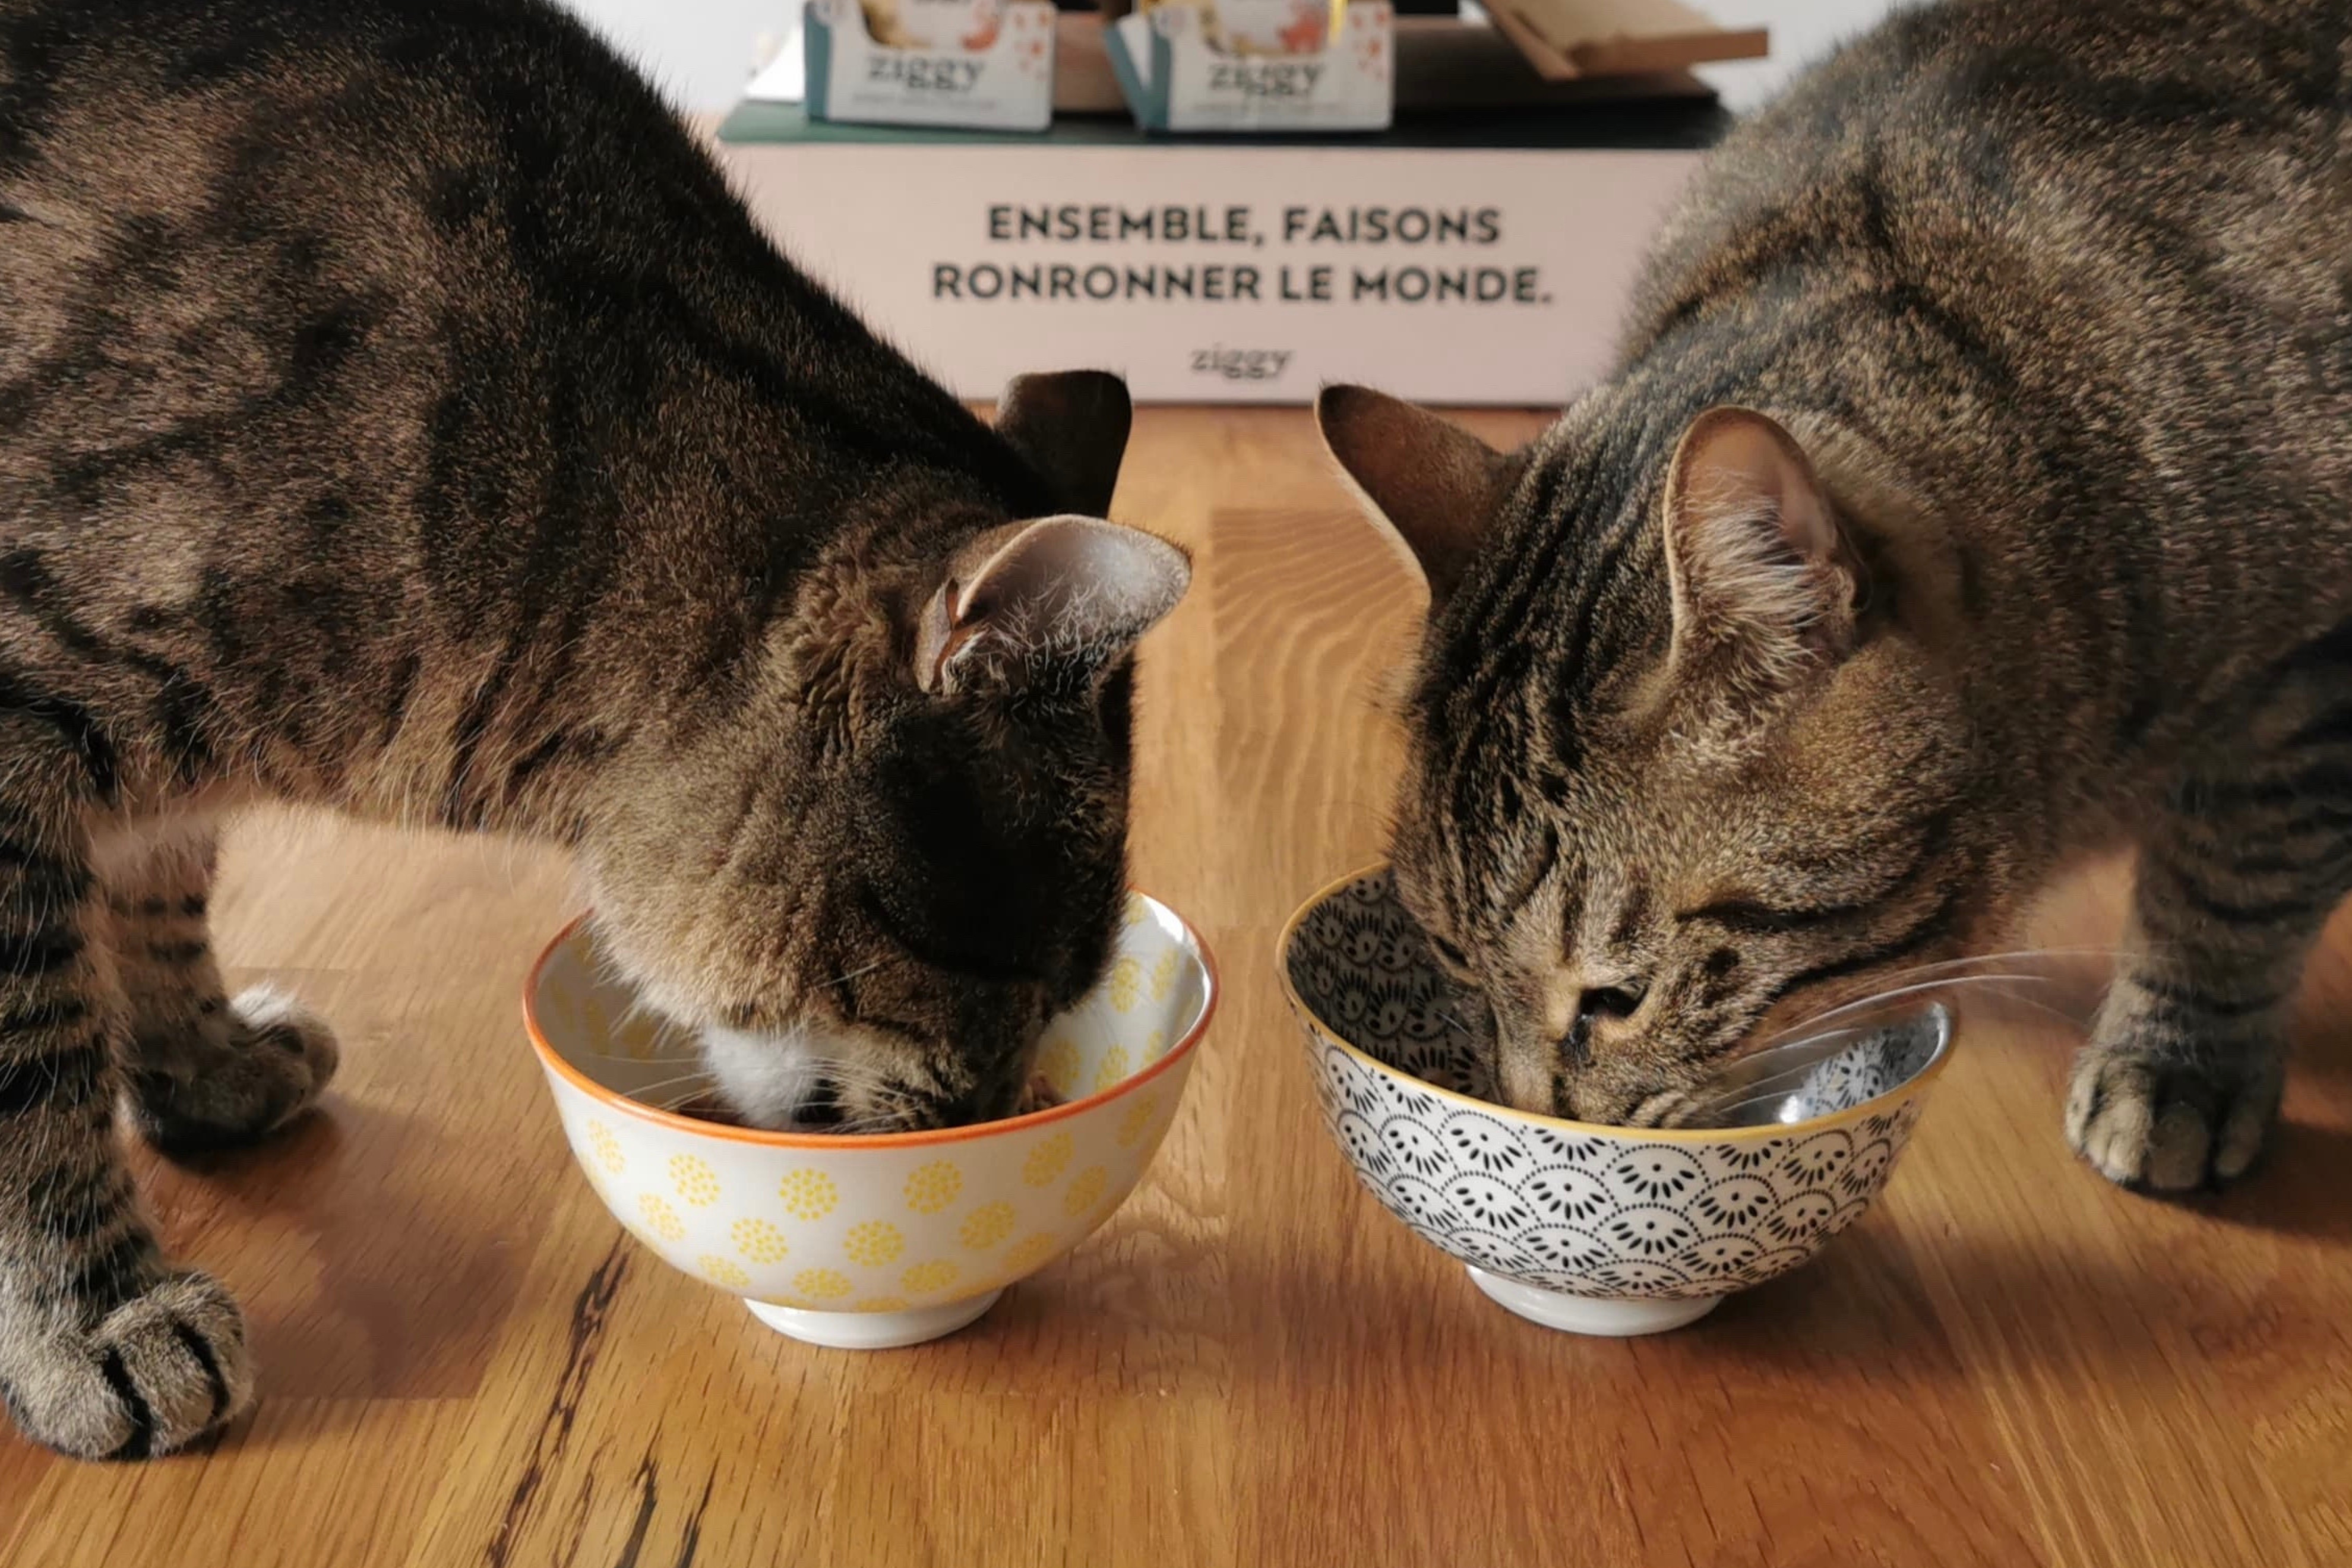 Nourriture pour chat : une alimentation équilibrée